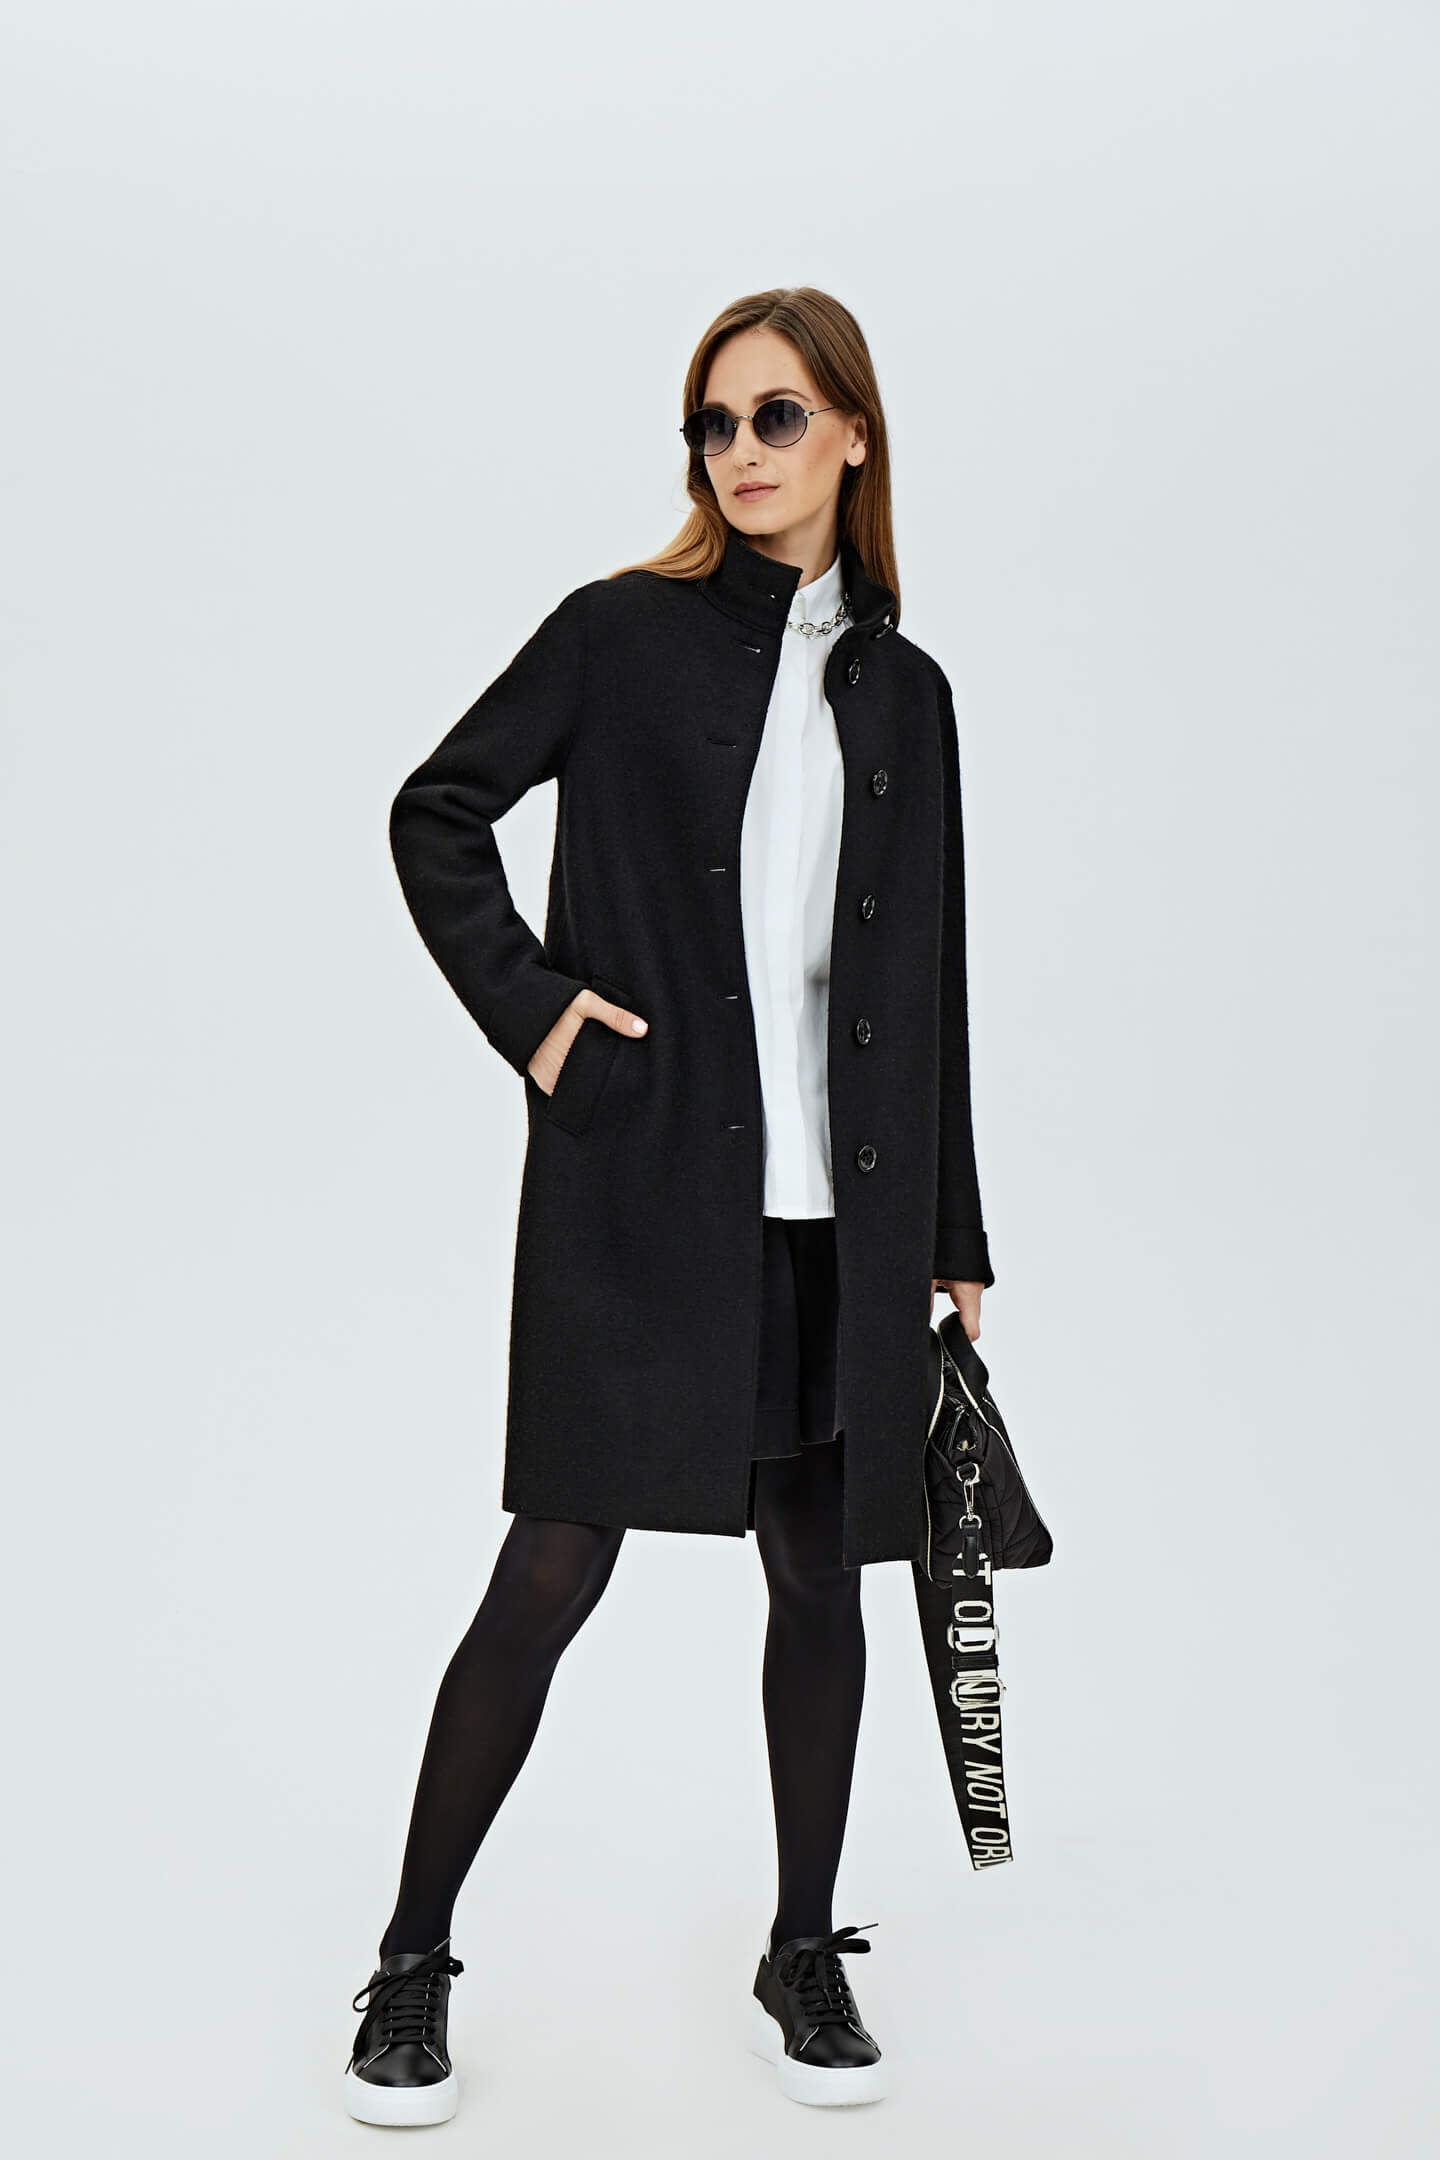 Как выбрать идеальное длинное пальто для женщины